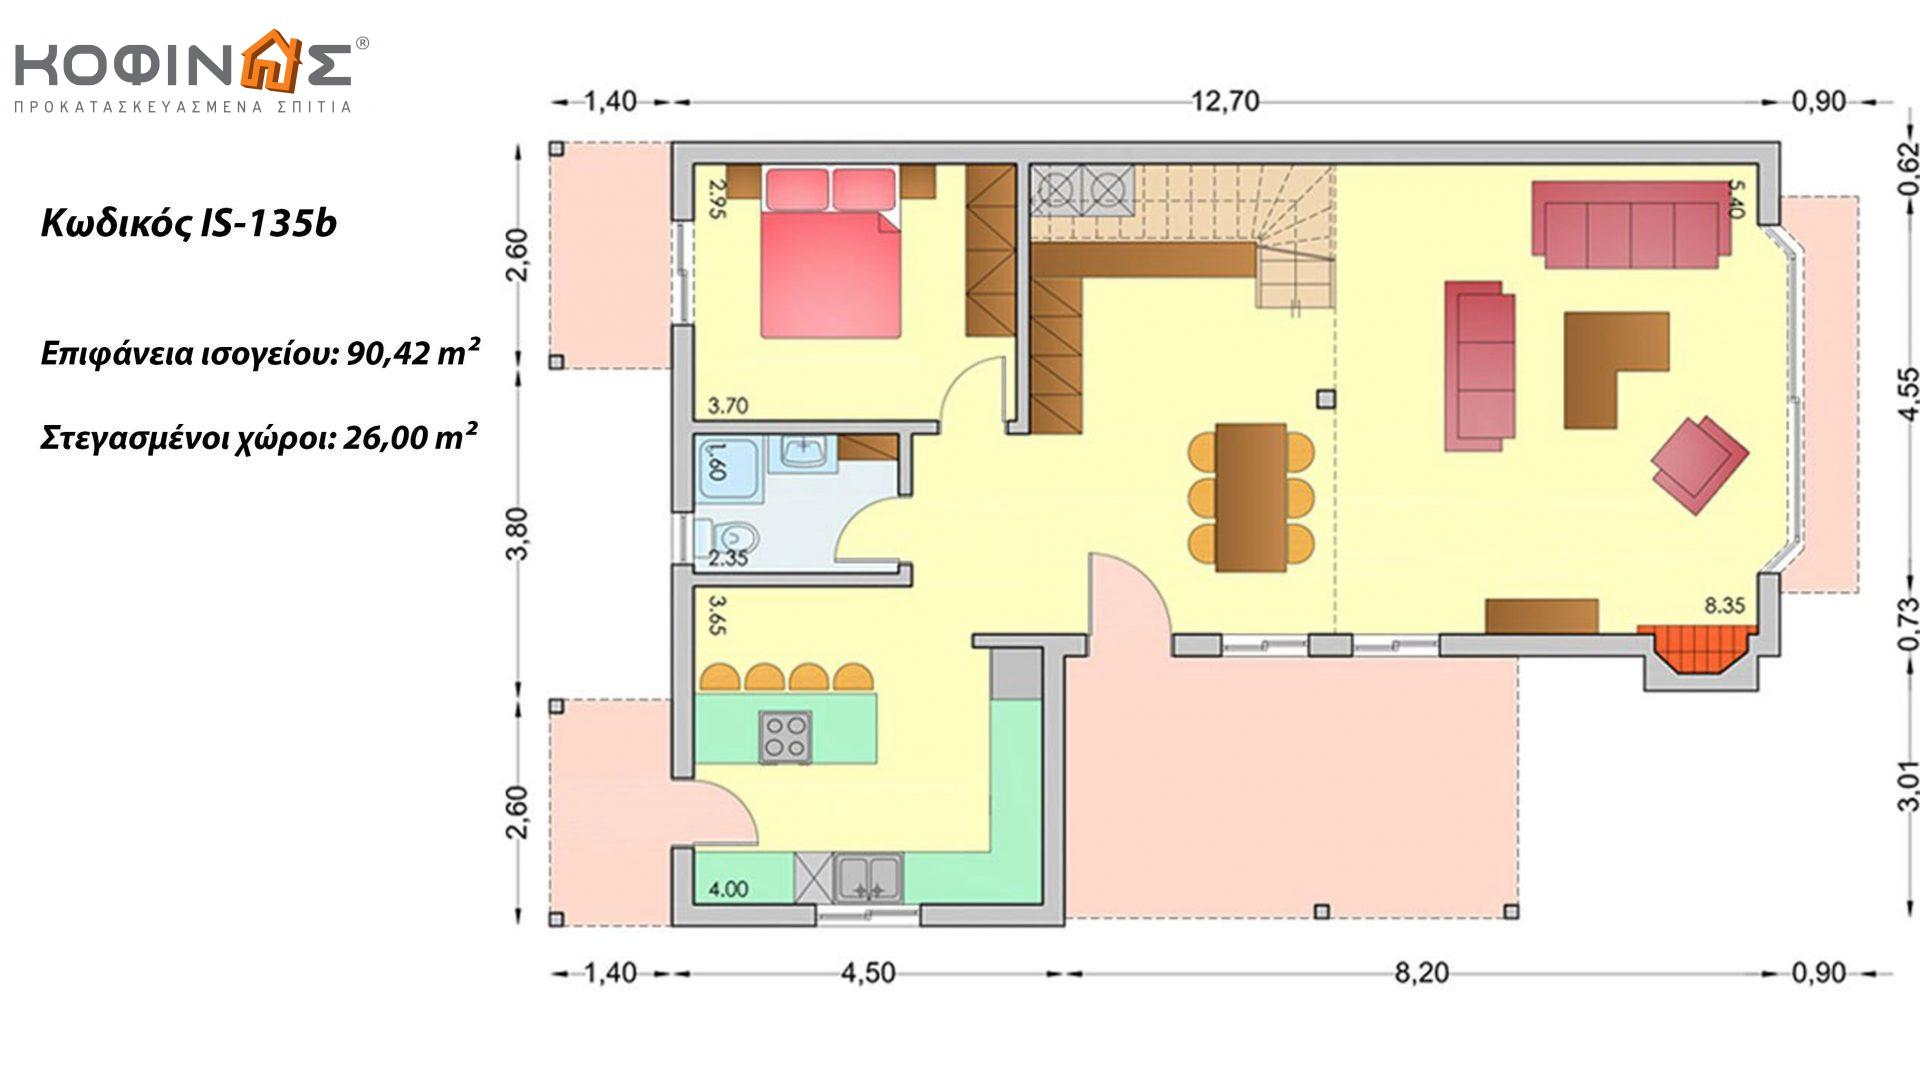 Ισόγεια Κατοικία με Σοφίτα IS-135b, συνολικής επιφάνειας 135,25 τ.μ. ,συνολική επιφάνεια στεγασμένων χώρων 26,00 τ.μ.